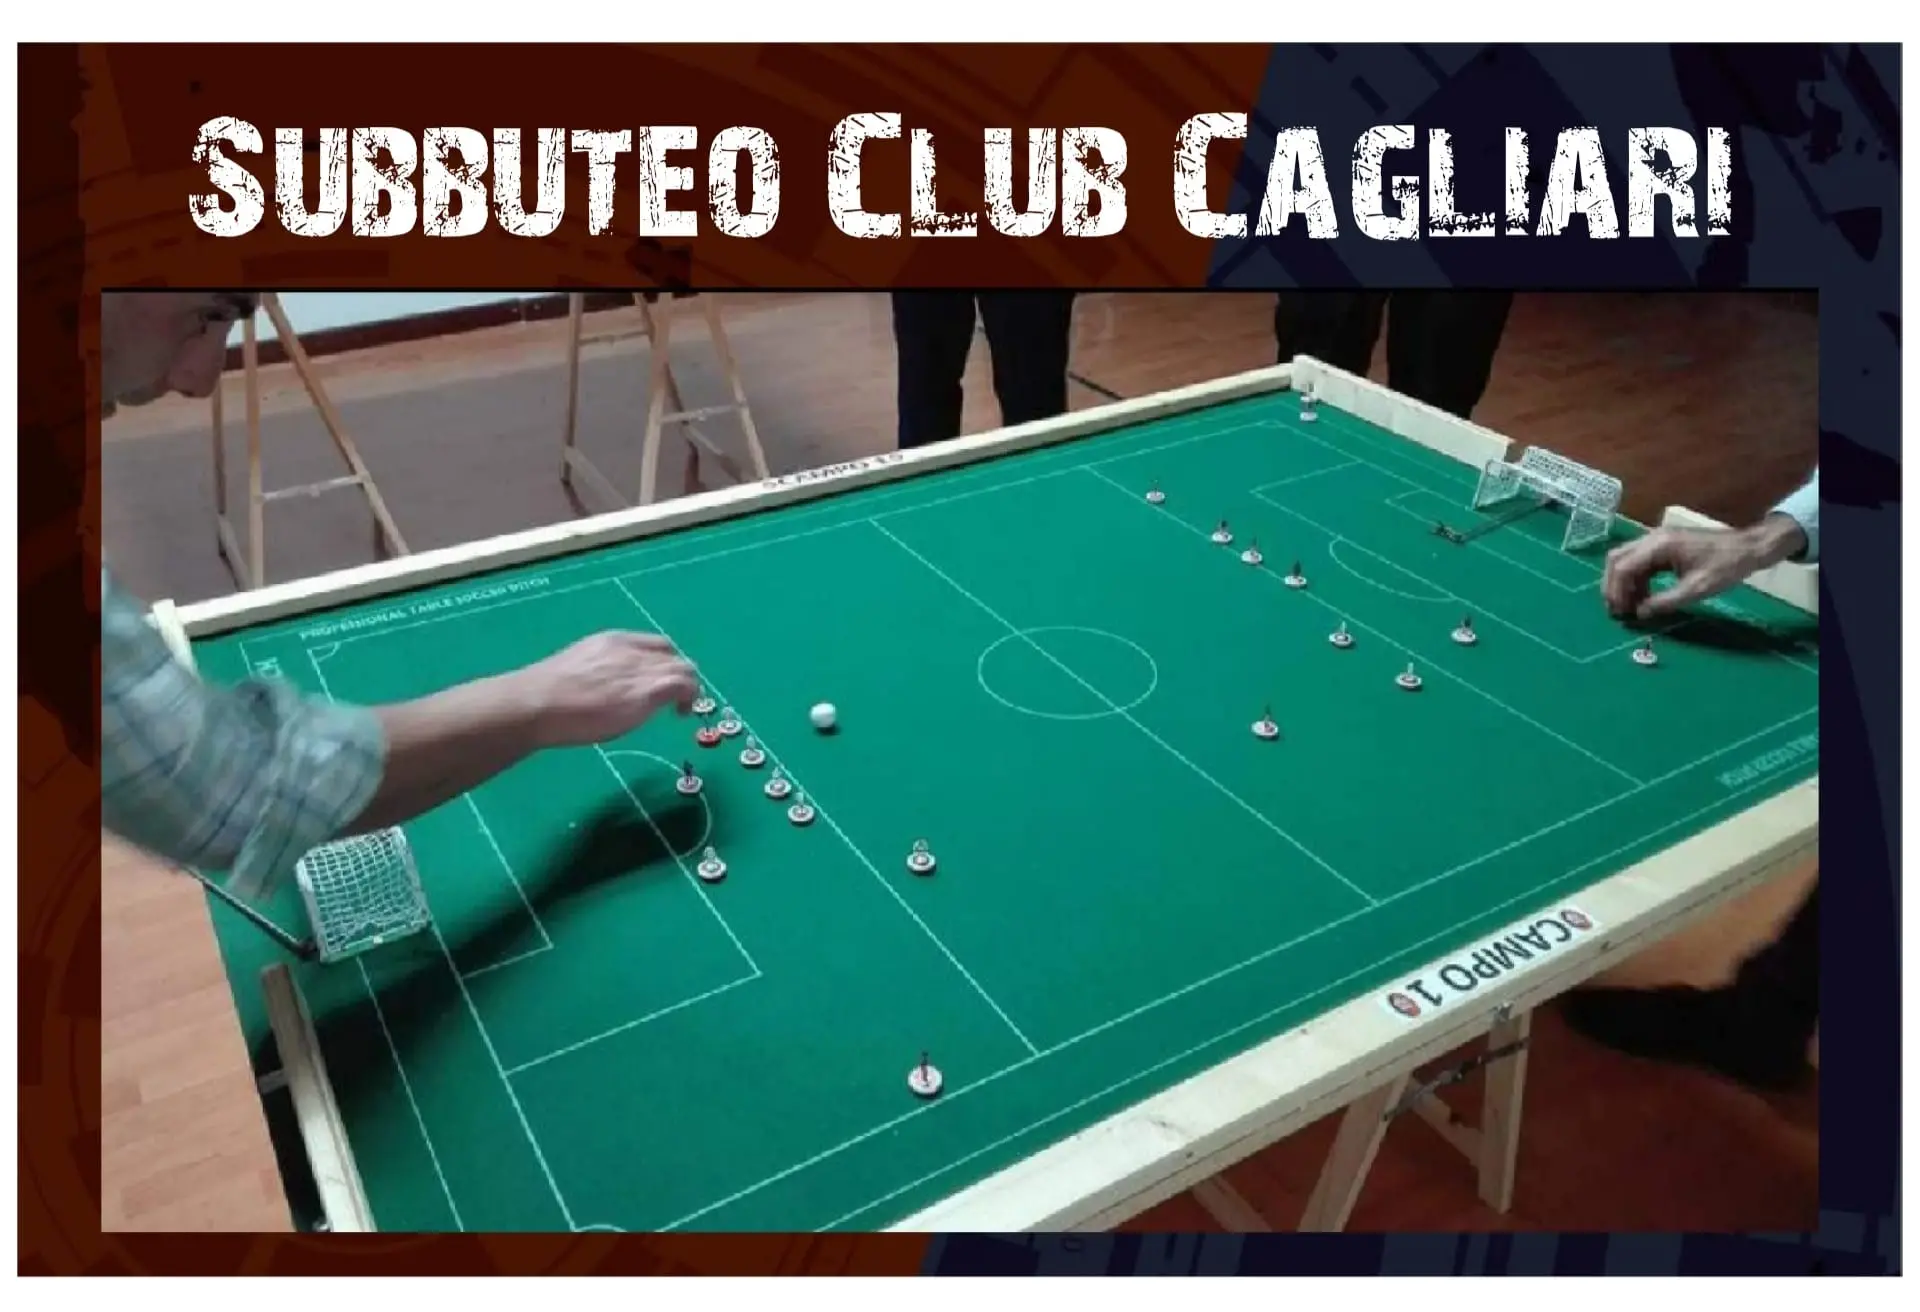 Il campo di Subbuteo (foto Subbuteo Club Cagliari)